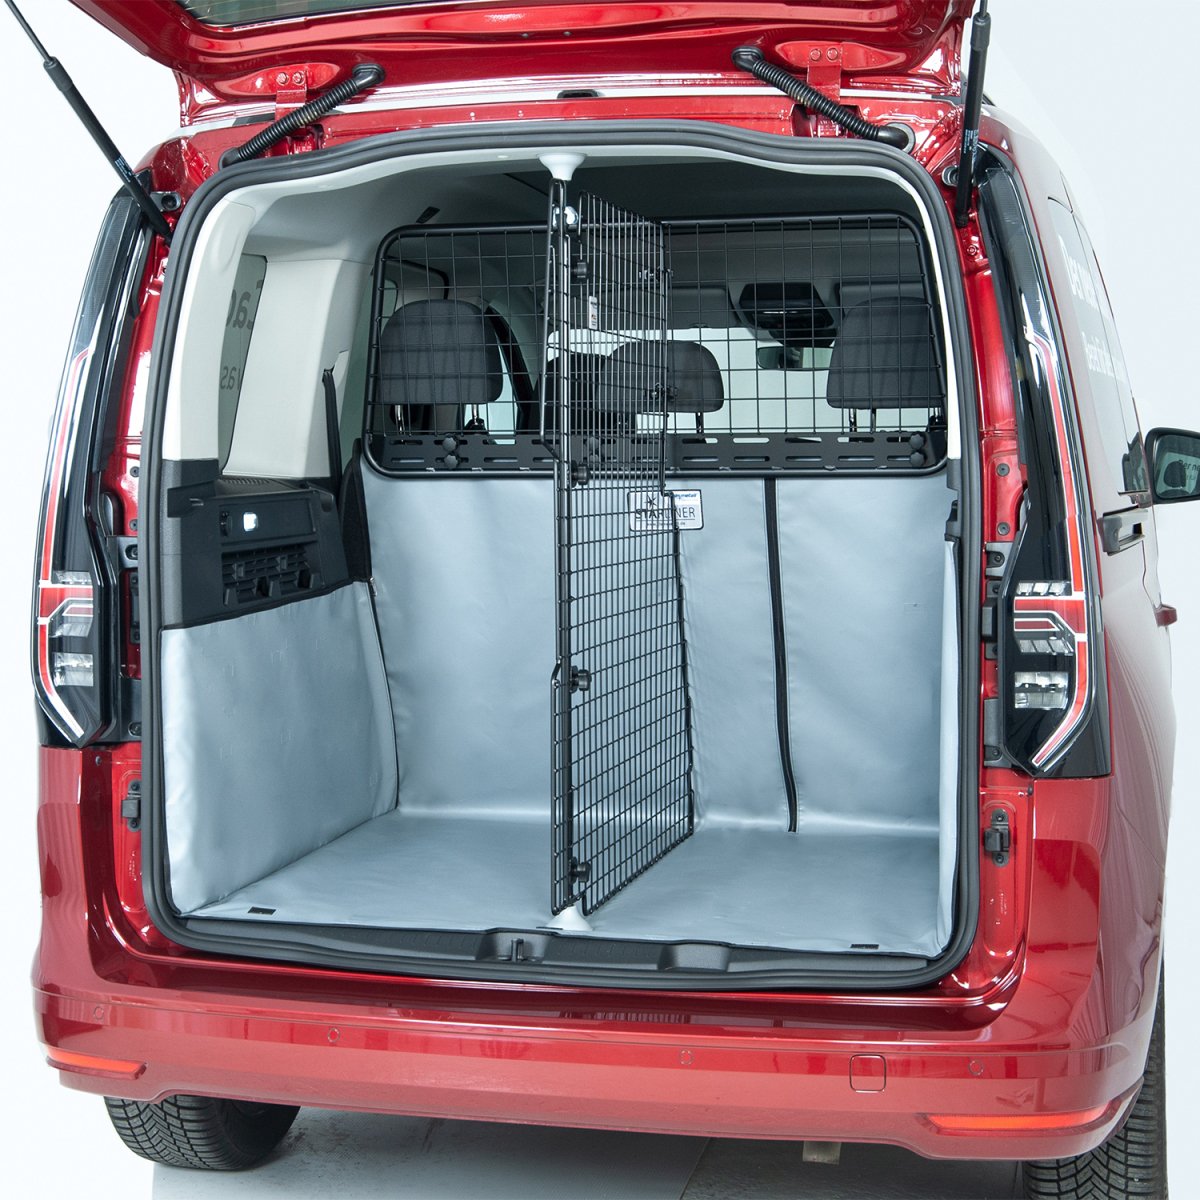 Kleinmetall Kofferraumwanne für Hyundai Kona Elektro Ladeboden tief grau tierxxl-de